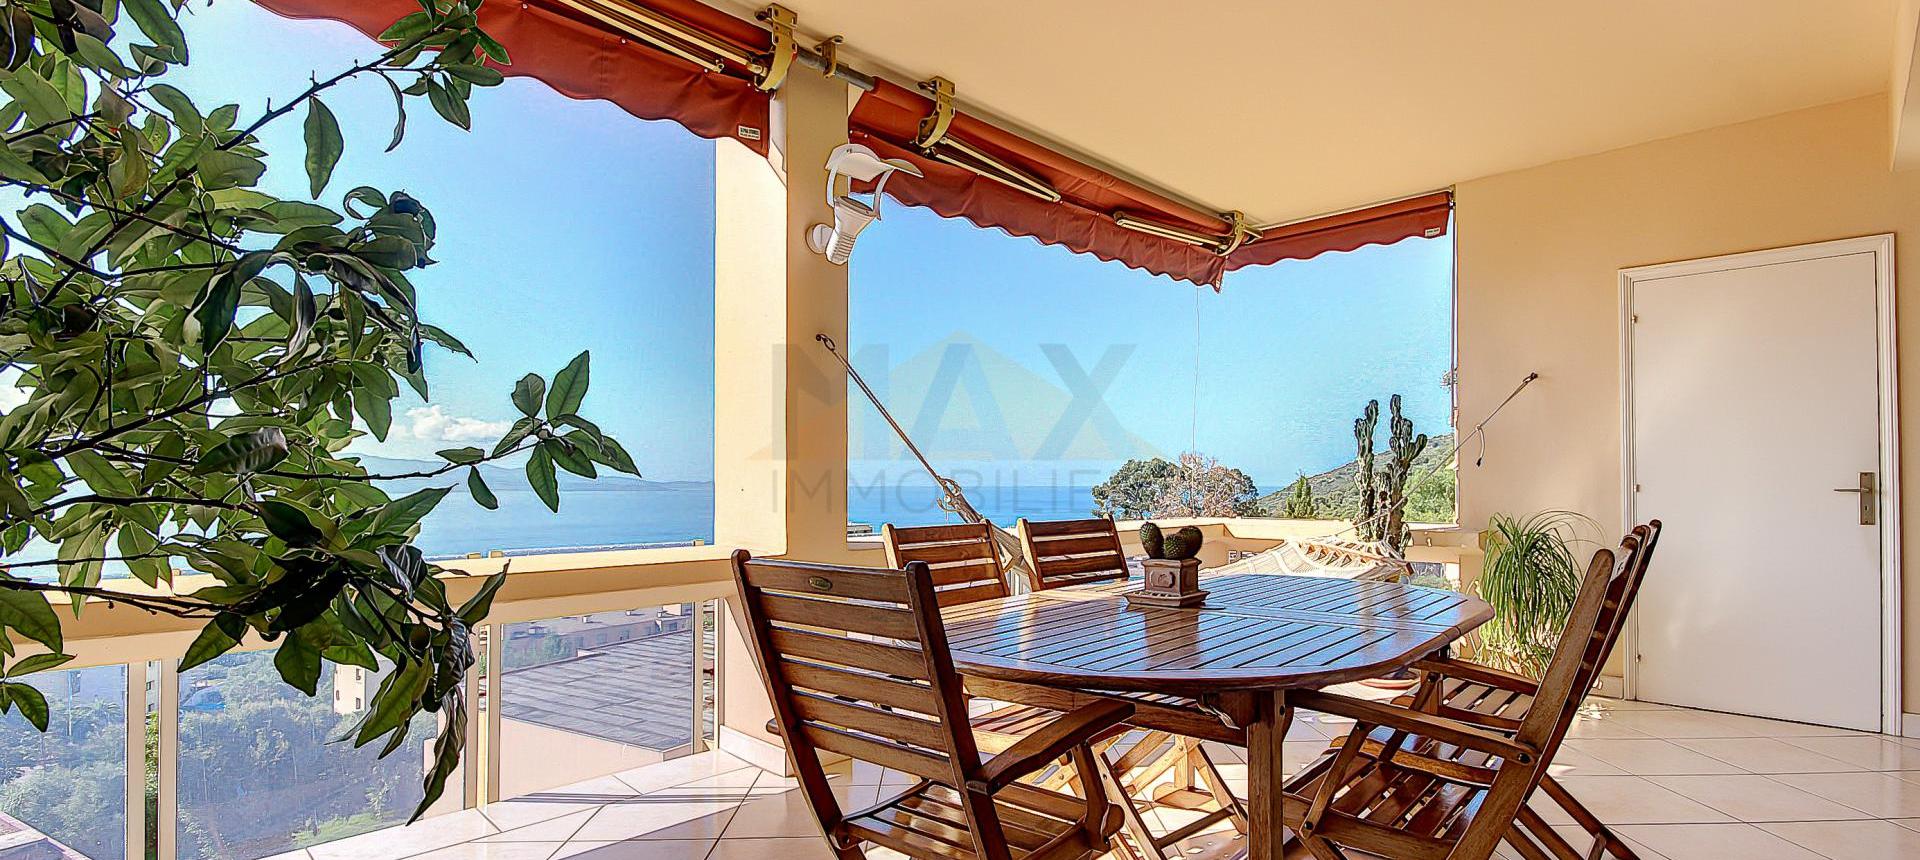 En Corse, à Ajaccio, dans le secteur prisé du SALARIO, vente d'un grand appartement de 155 m² avec très belle vue mer.